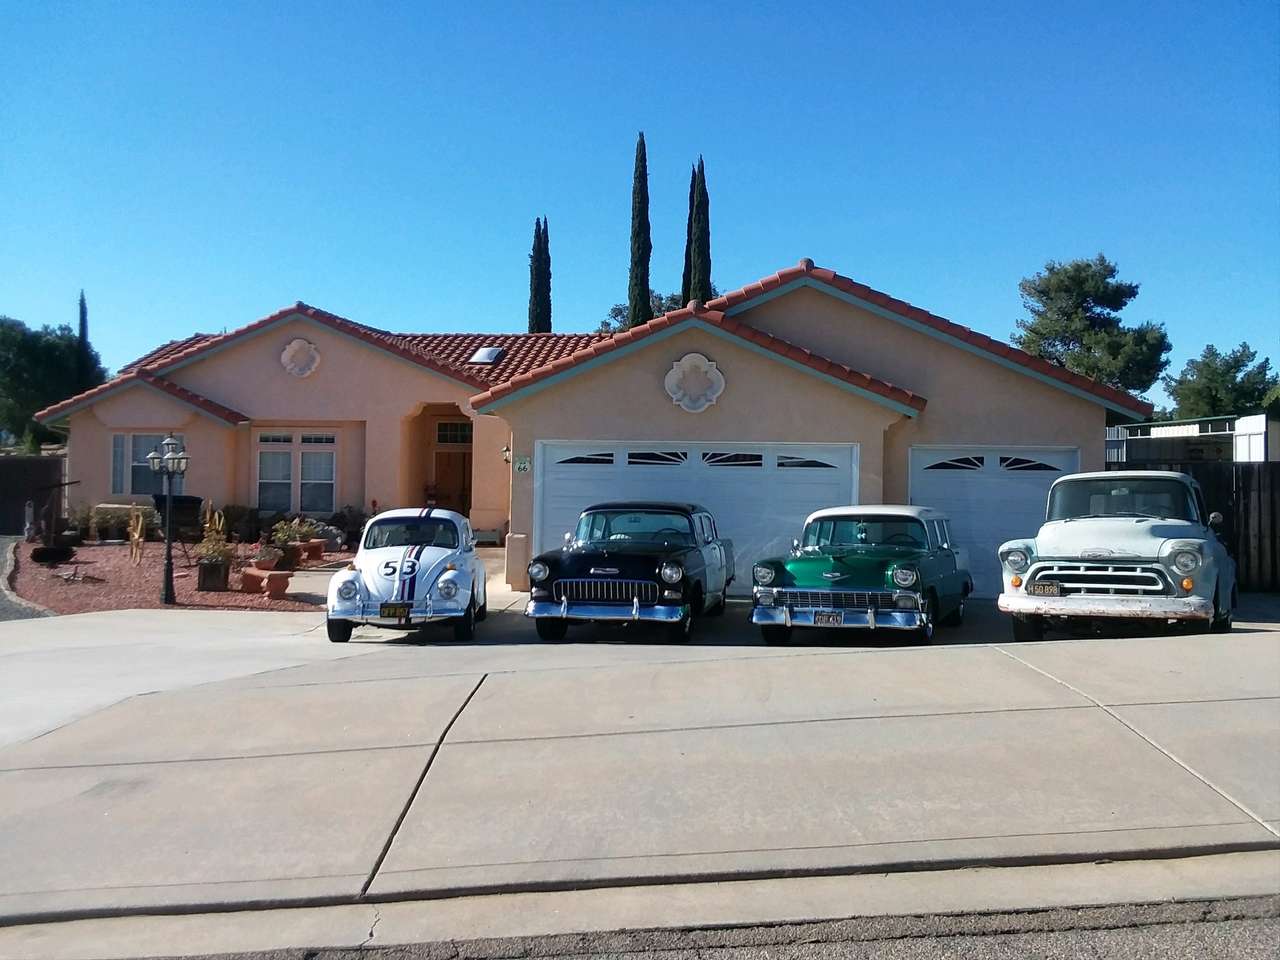 Herbie, 55 chevy, 56 chevy et 57 chevy truck puzzle en ligne à partir d'une photo